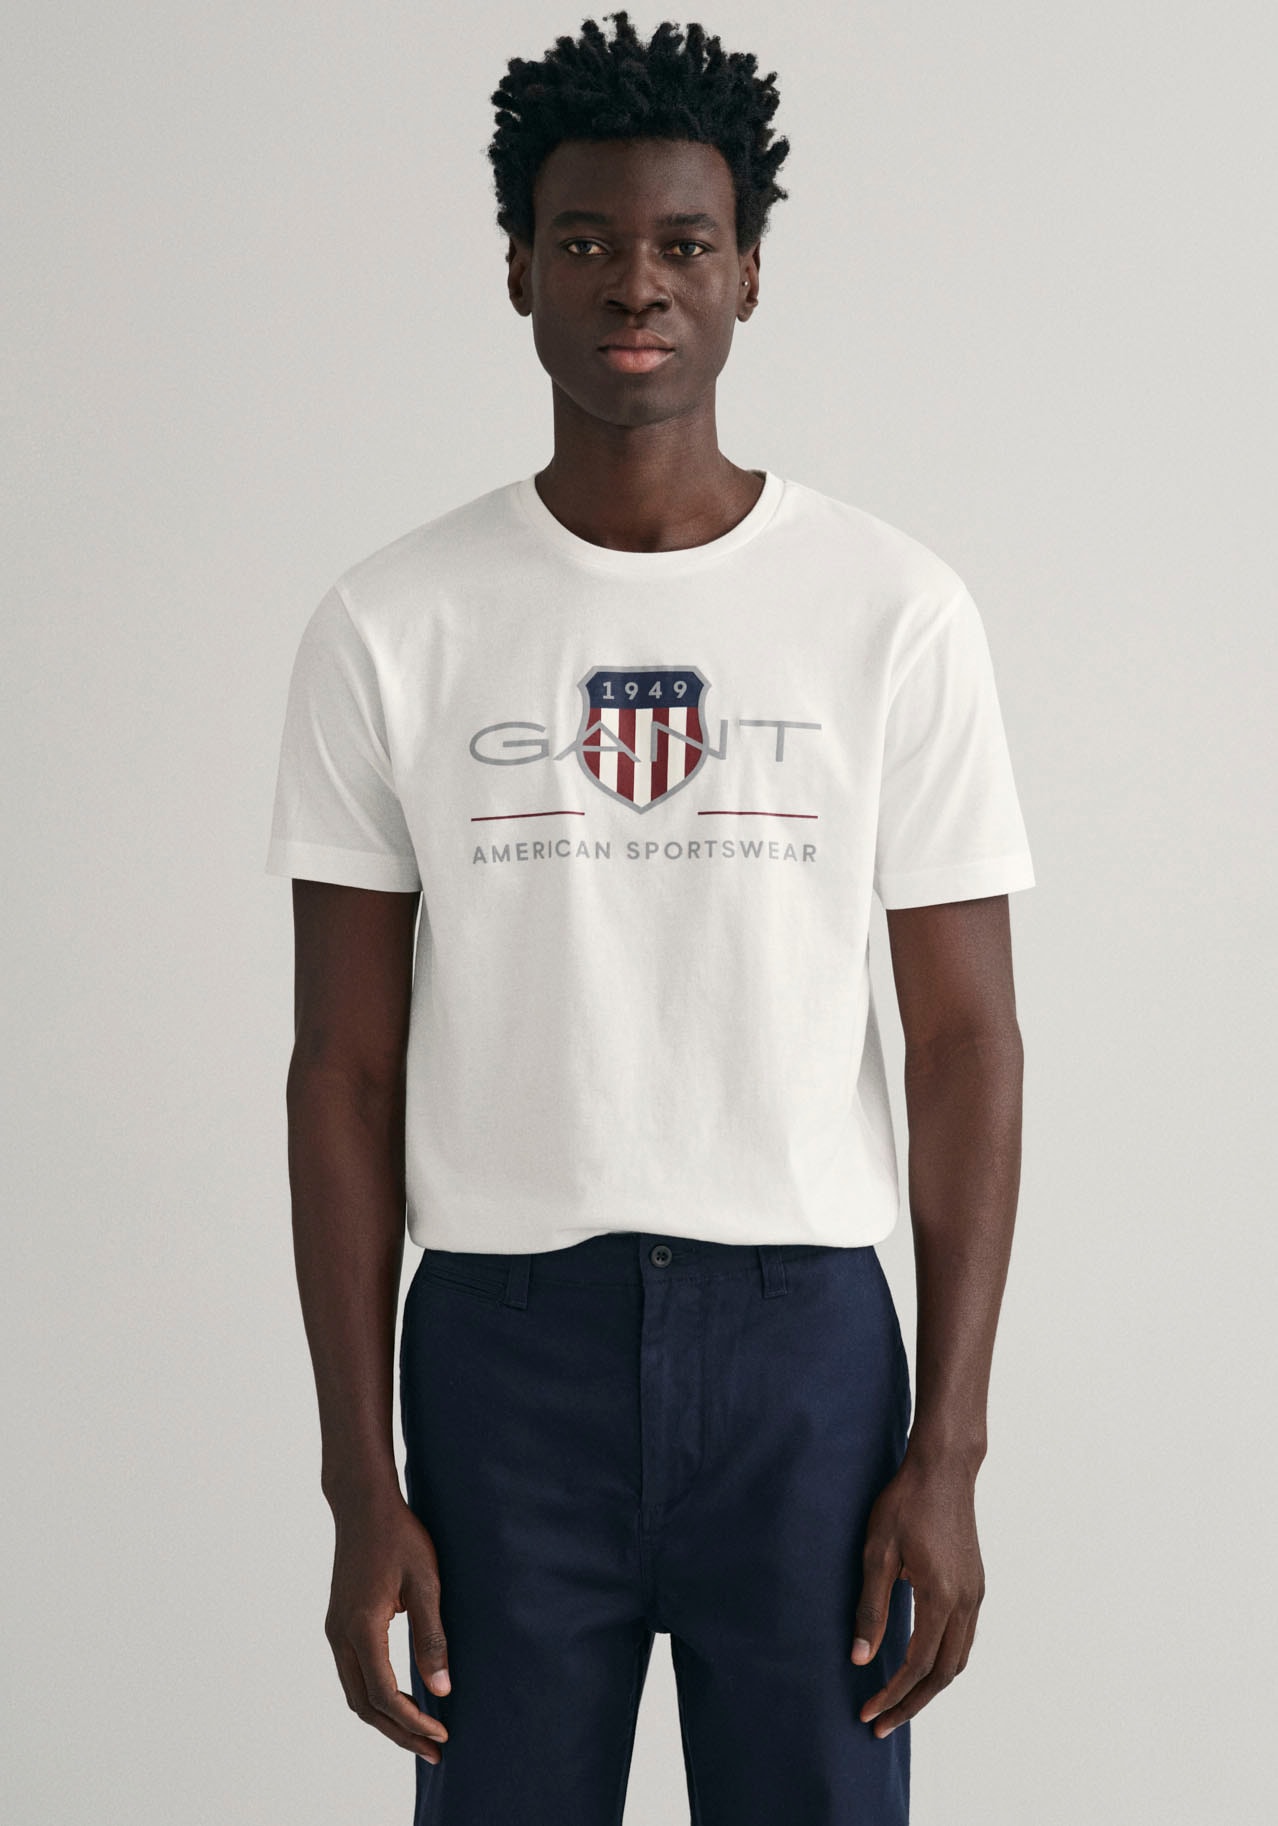 der Brust Gant bei Logodruck auf T-SHIRT«, SS shoppen ARCHIVE online »REG SHIELD mit T-Shirt OTTO